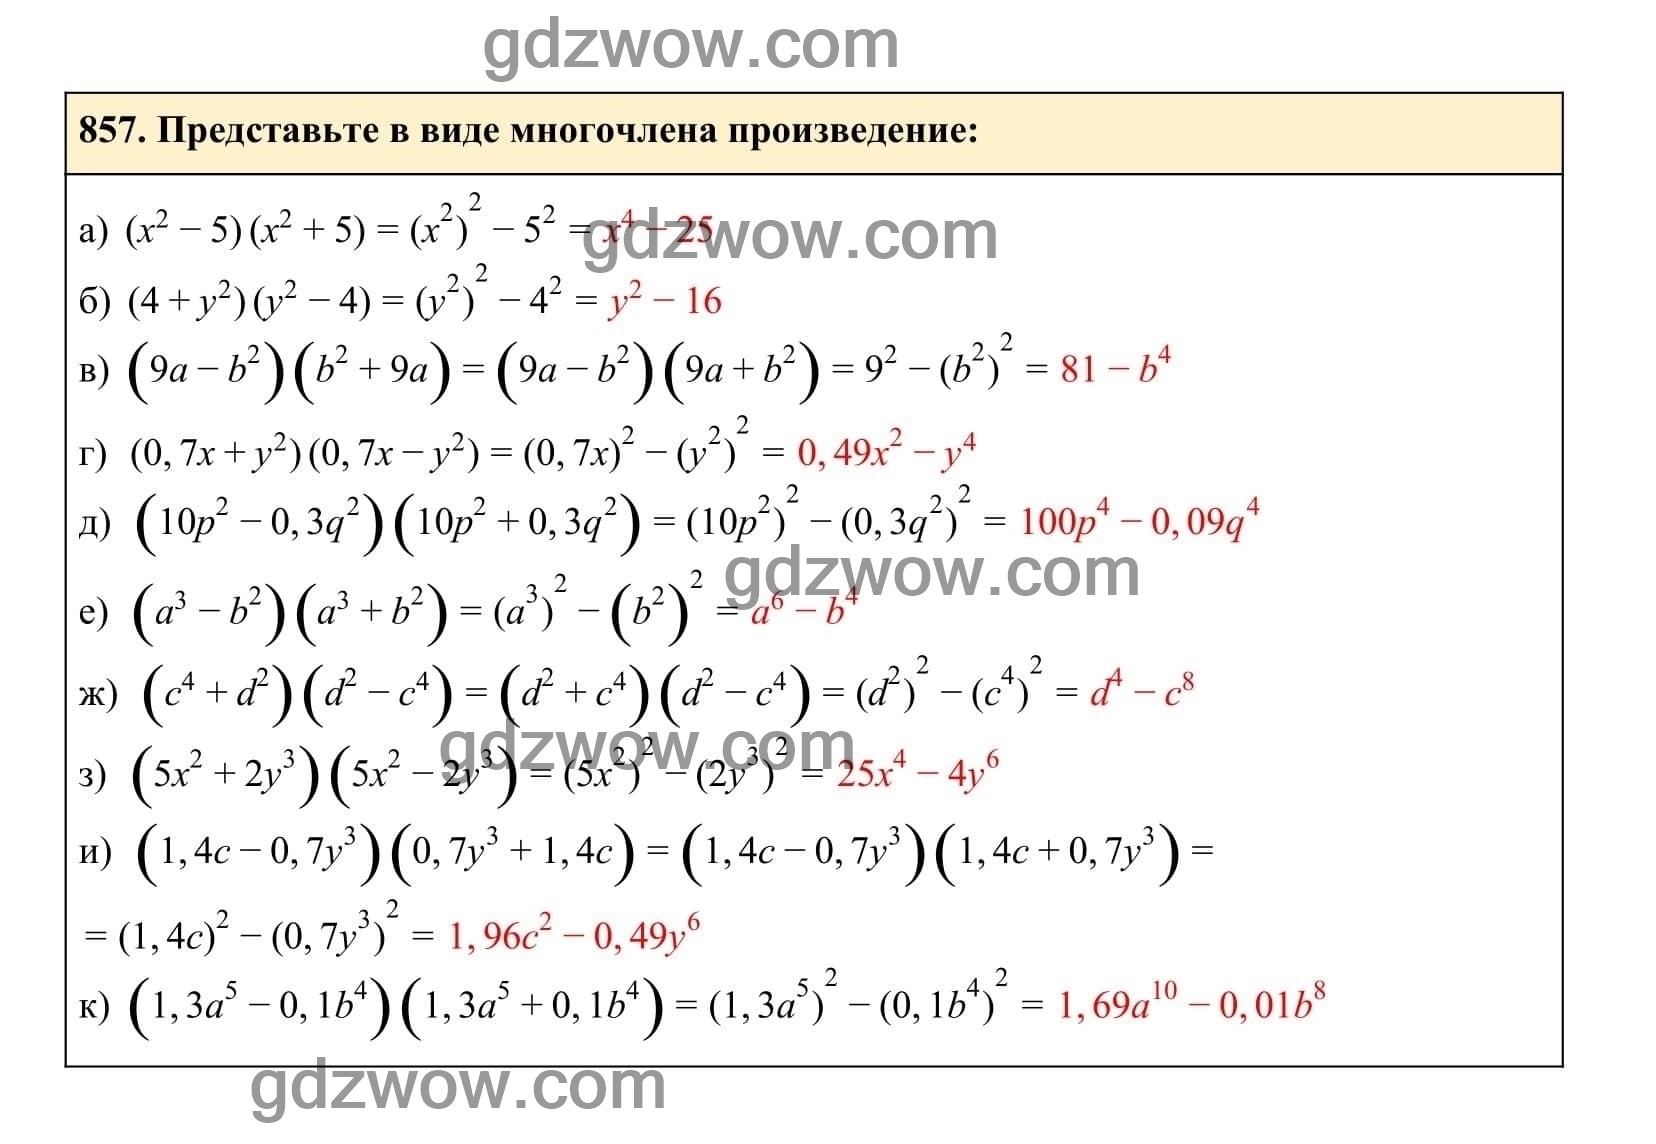 Упражнение 857 - ГДЗ по Алгебре 7 класс Учебник Макарычев (решебник) - GDZwow